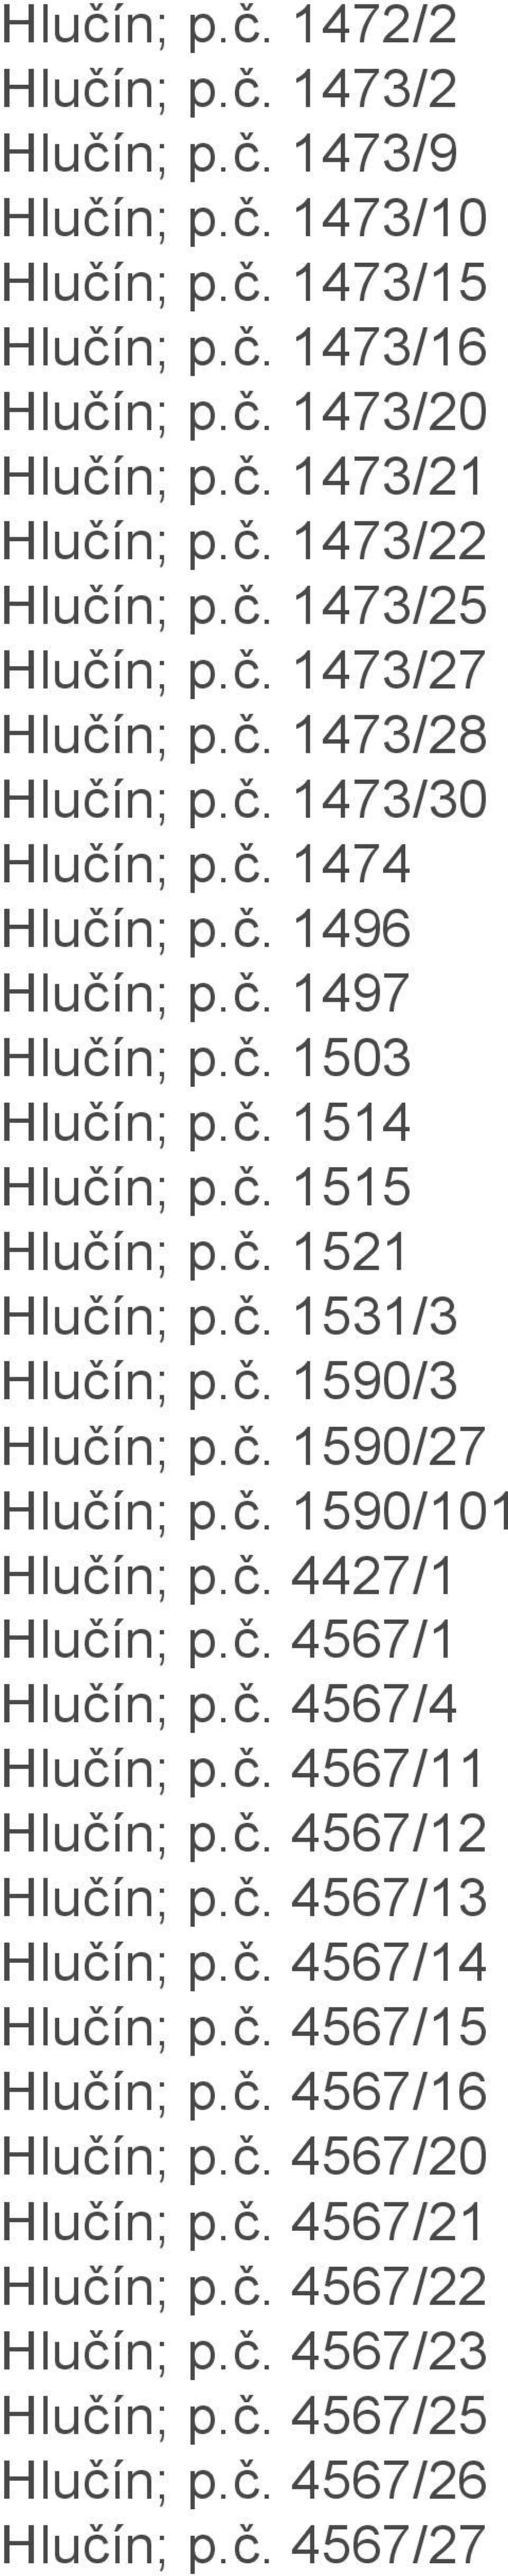 . 1521 Hluín; p.. 1531/3 Hluín; p.. 1590/3 Hluín; p.. 1590/27 Hluín; p.. 1590/101 Hluín; p.. 4427/1 Hluín; p.. 4567/1 Hluín; p.. 4567/4 Hluín; p.. 4567/11 Hluín; p.. 4567/12 Hluín; p.